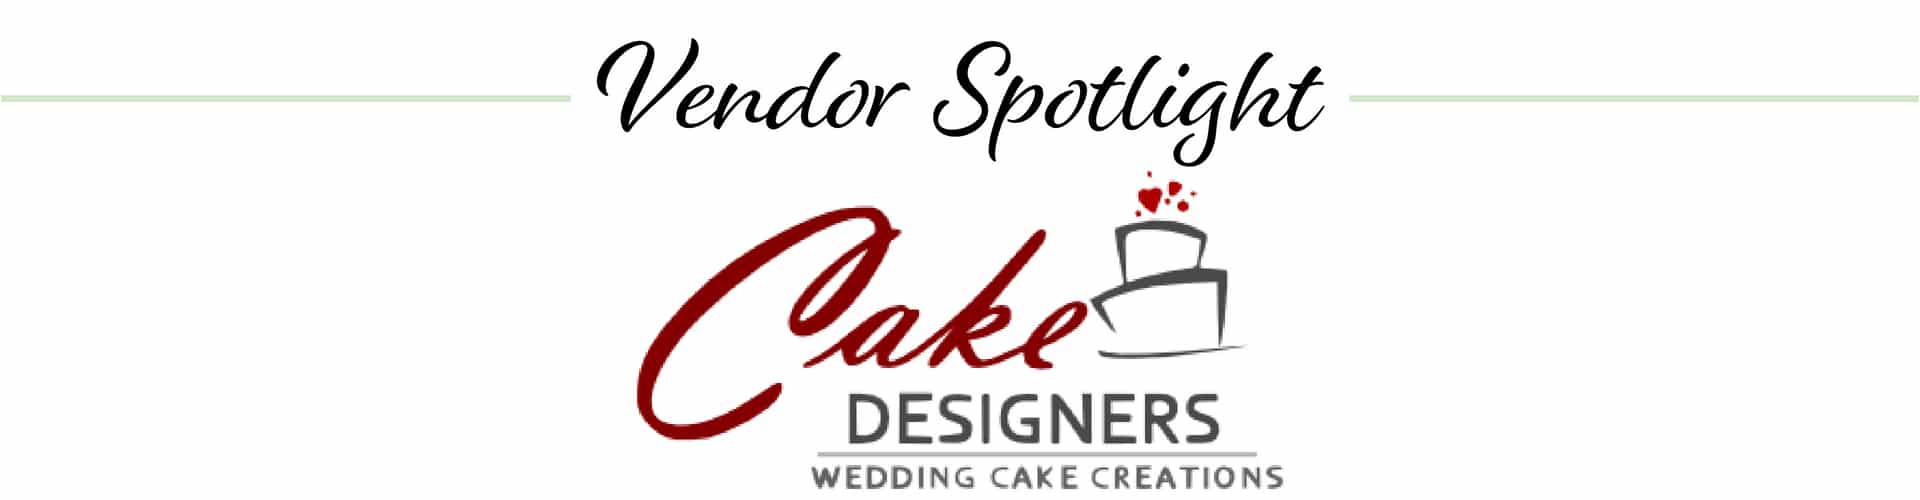 Cake Designers logo